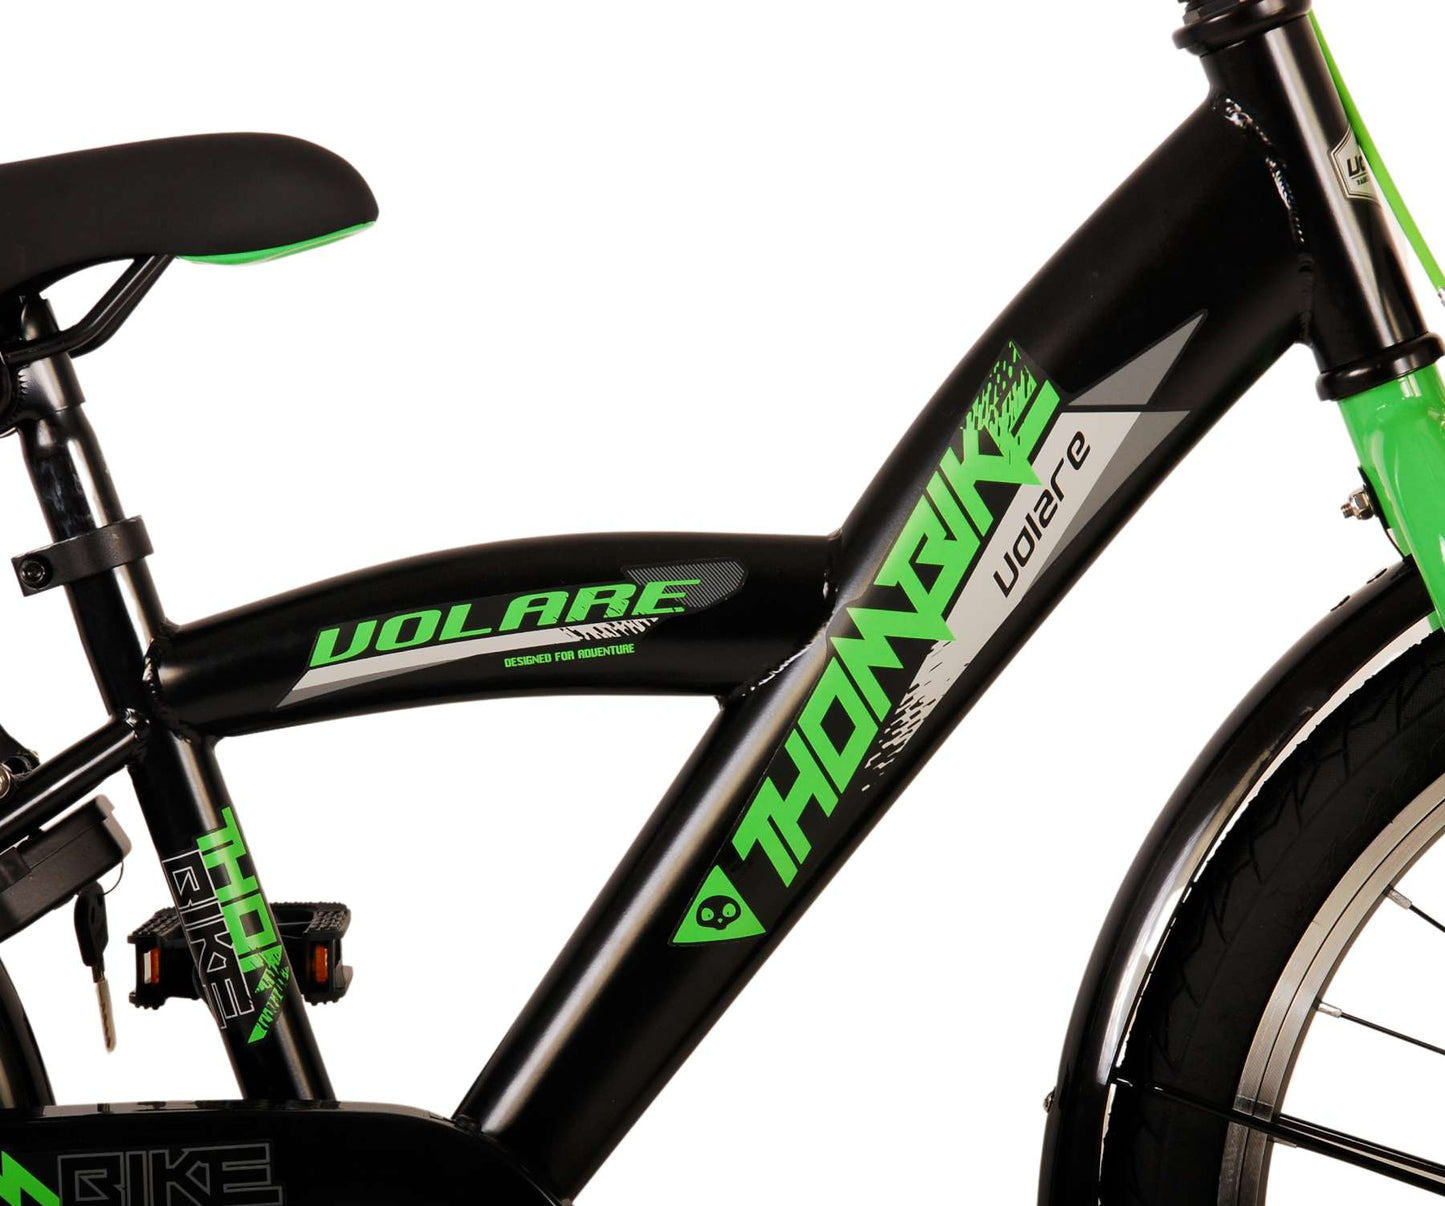 Volare Thombike Bike para niños - Niños - 20 pulgadas - Black Green